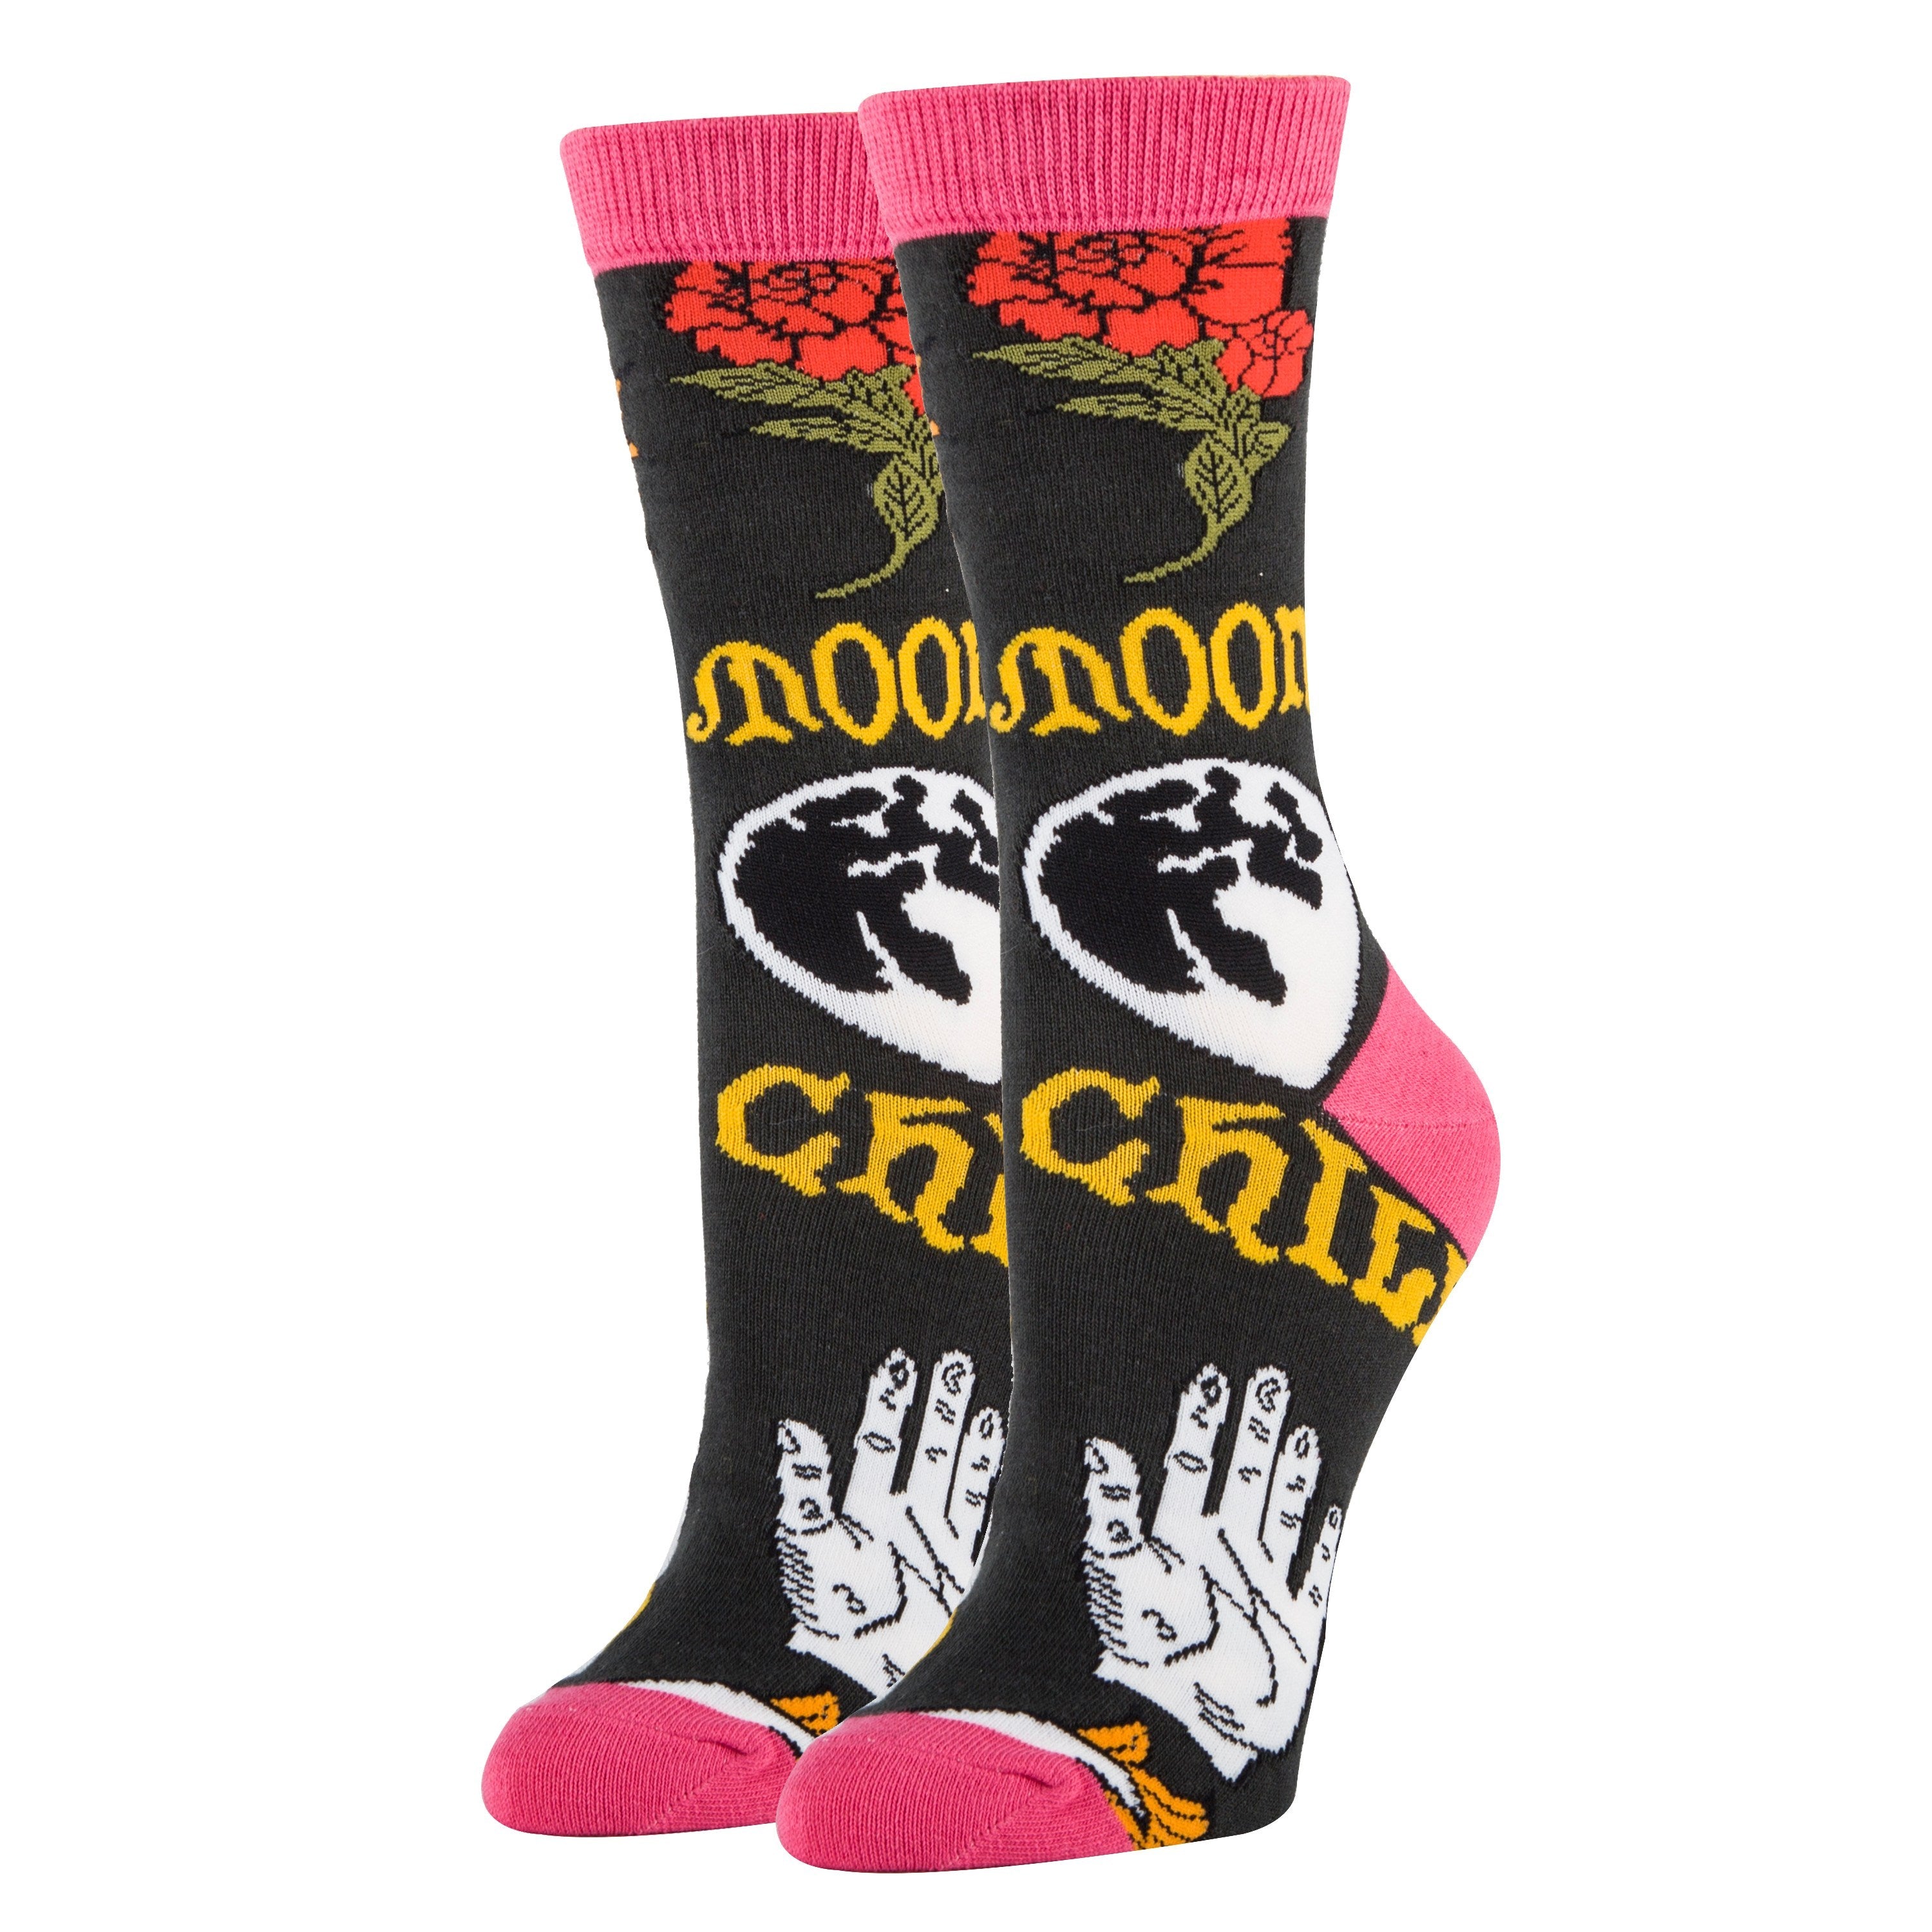 Moon Child Socks | Novelty Crew Socks For Women